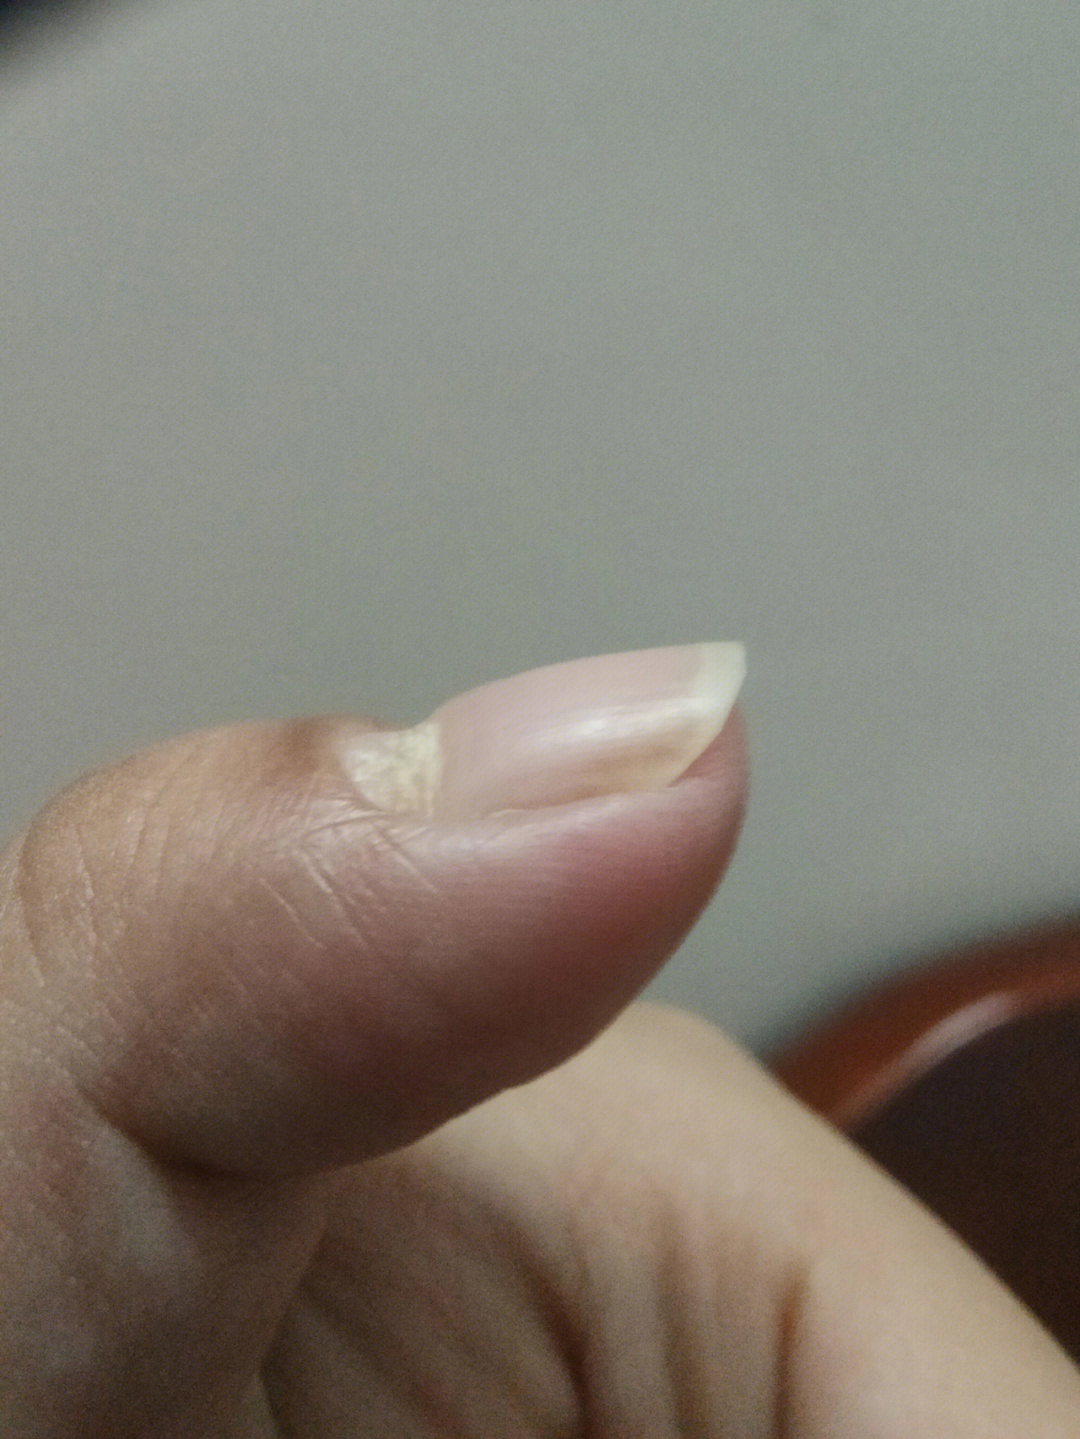 大拇指指甲凹陷一个坑图片